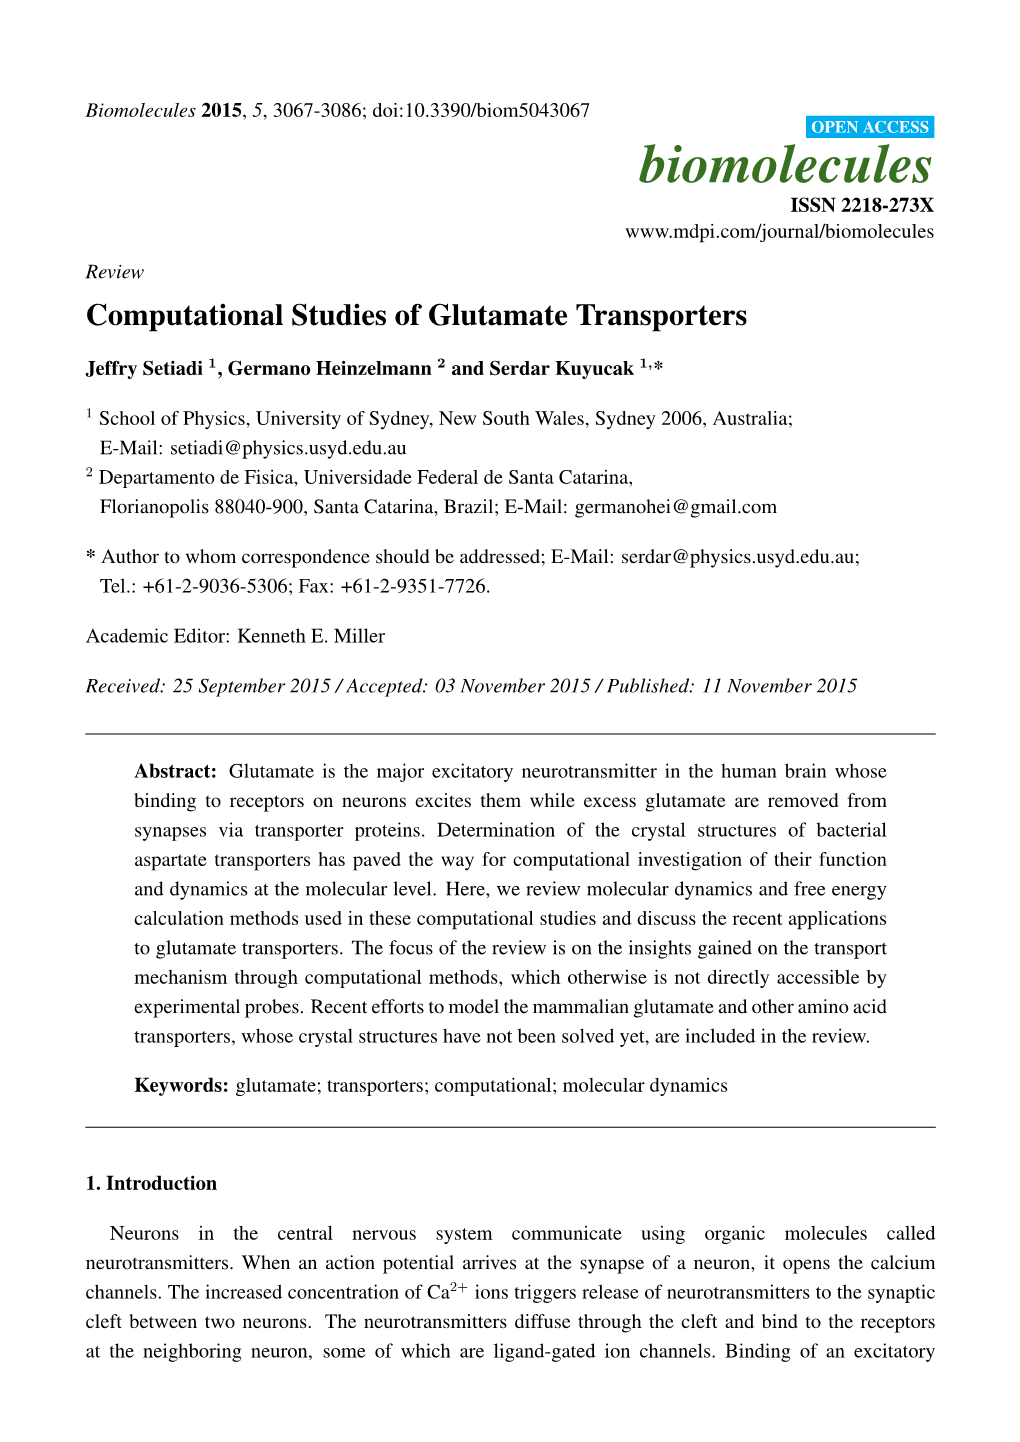 Computational Studies of Glutamate Transporters